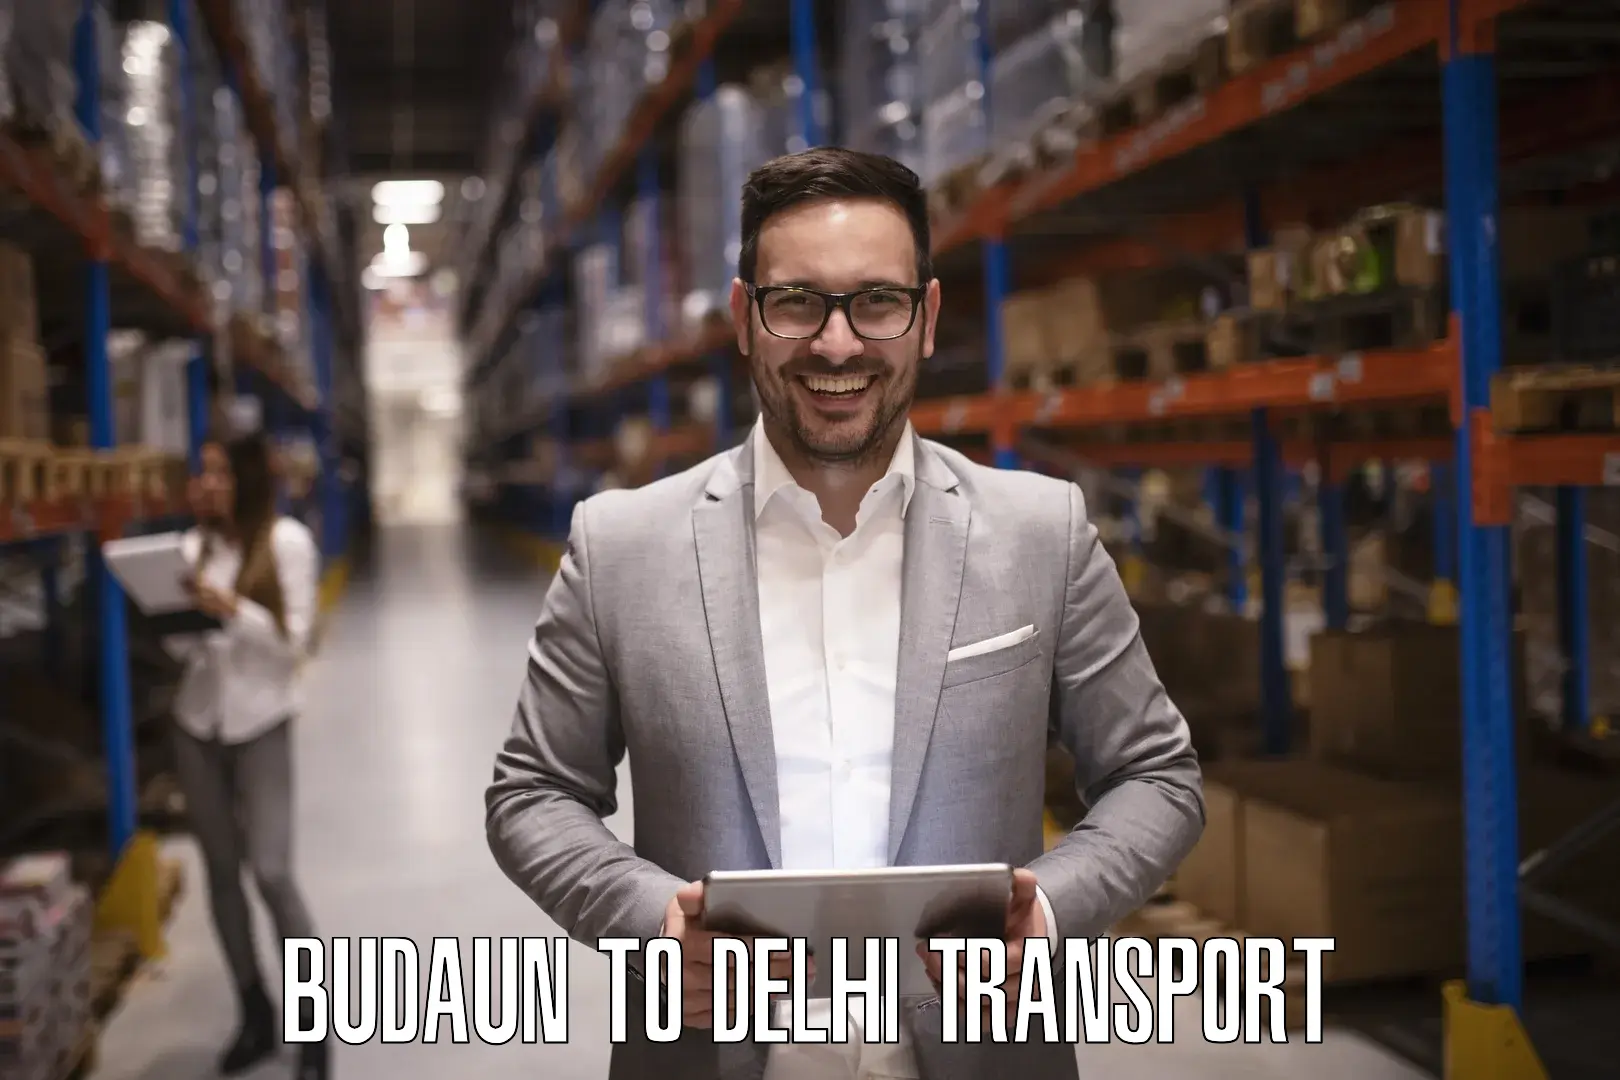 Lorry transport service Budaun to NCR